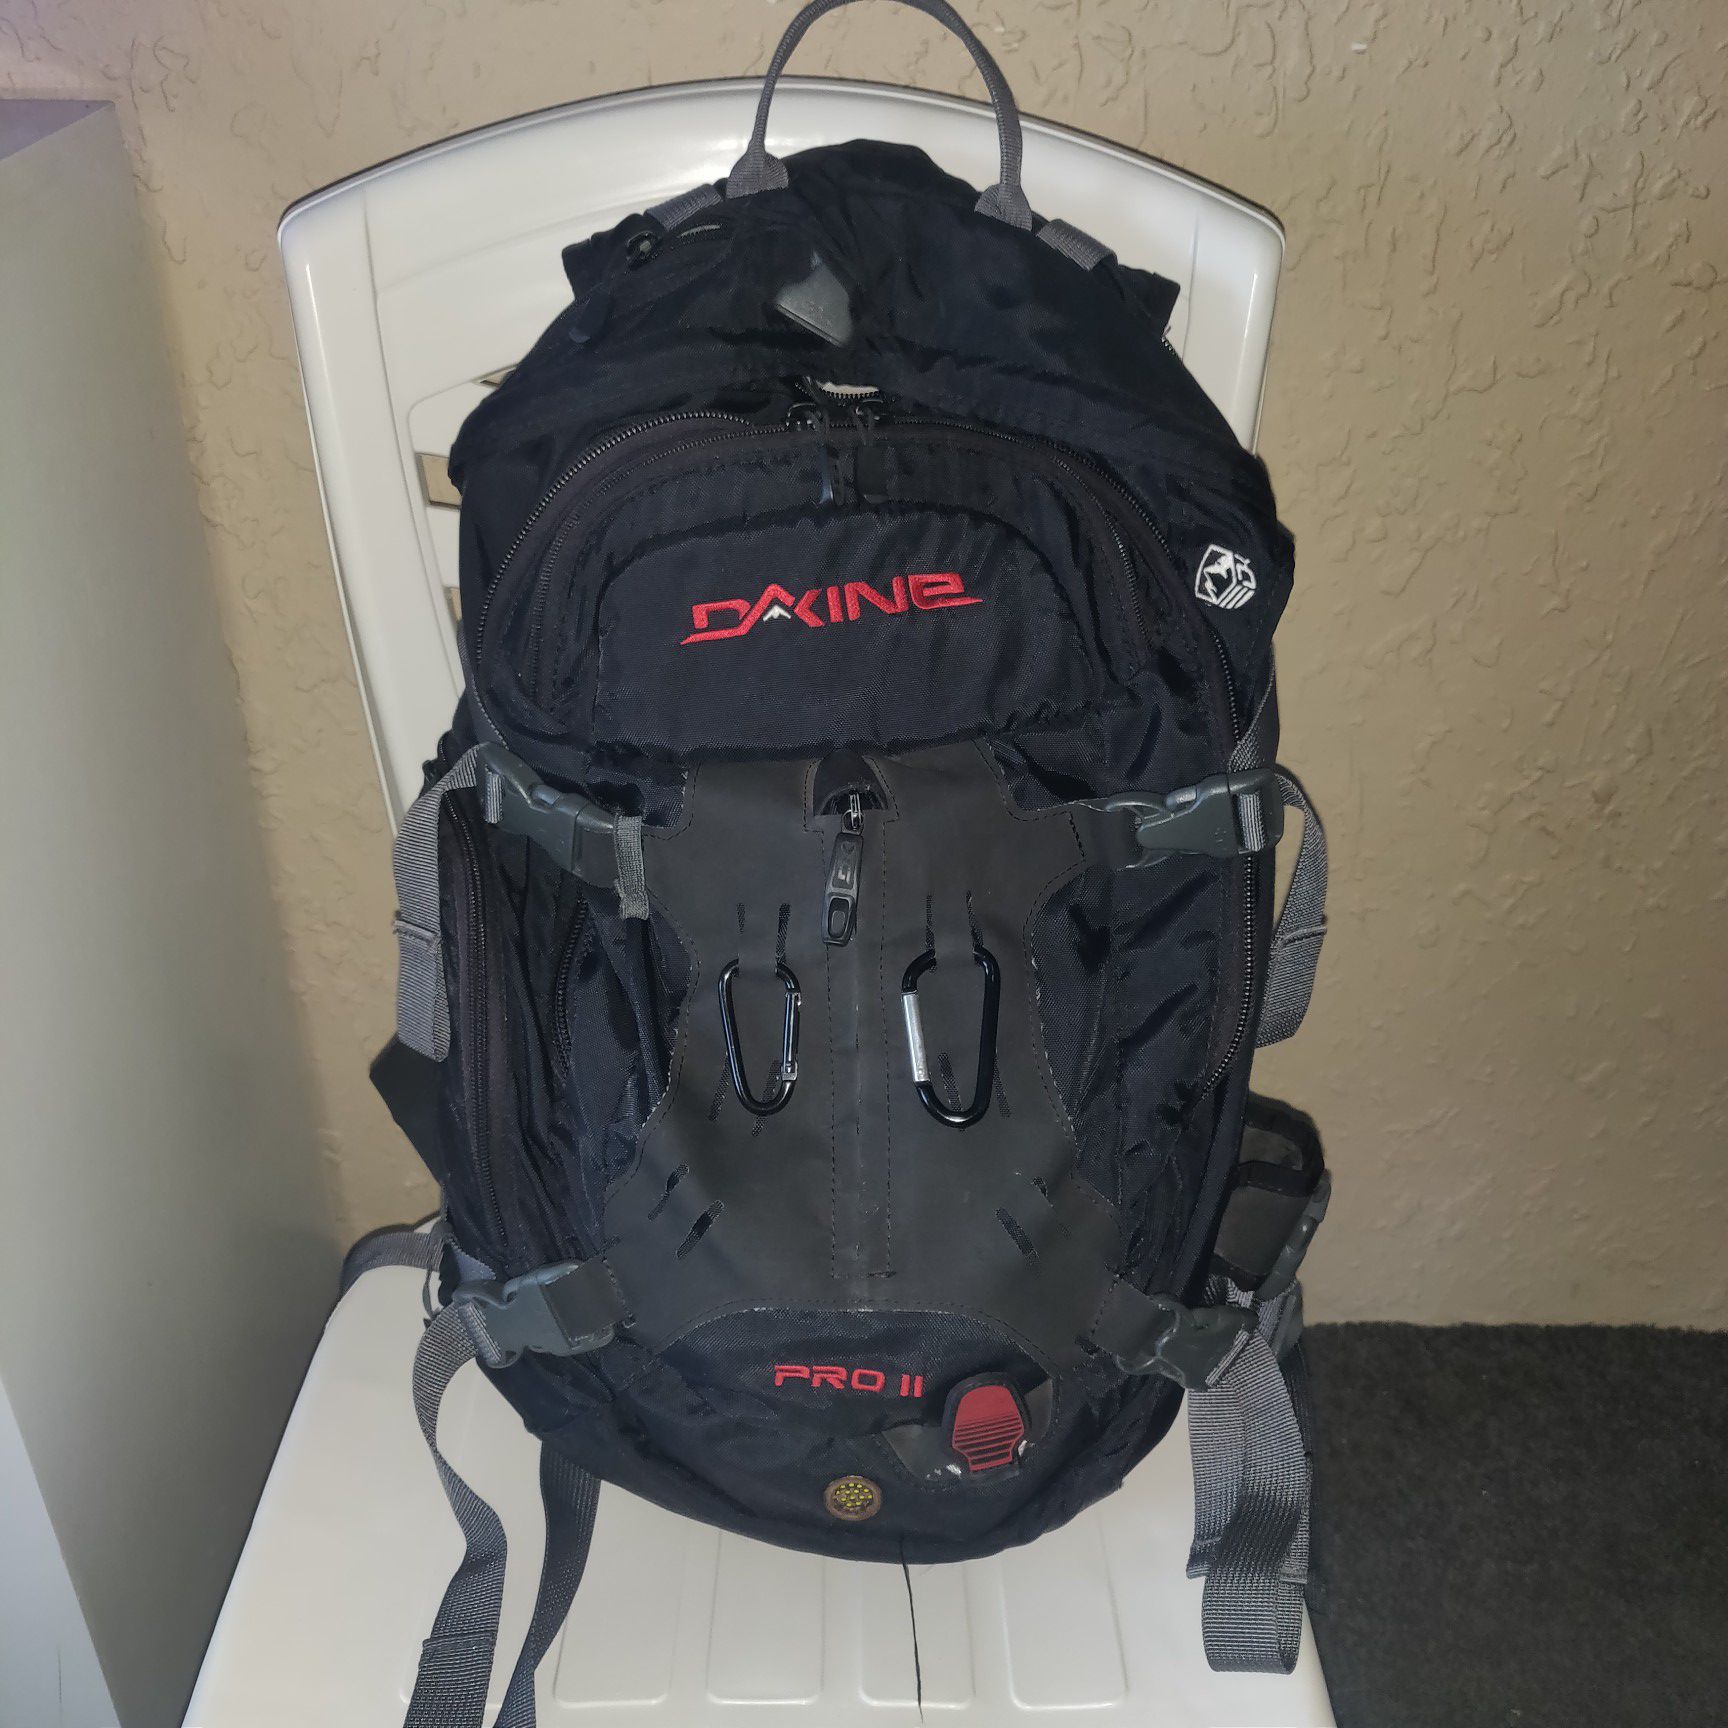 Dakine Pro II Backpack